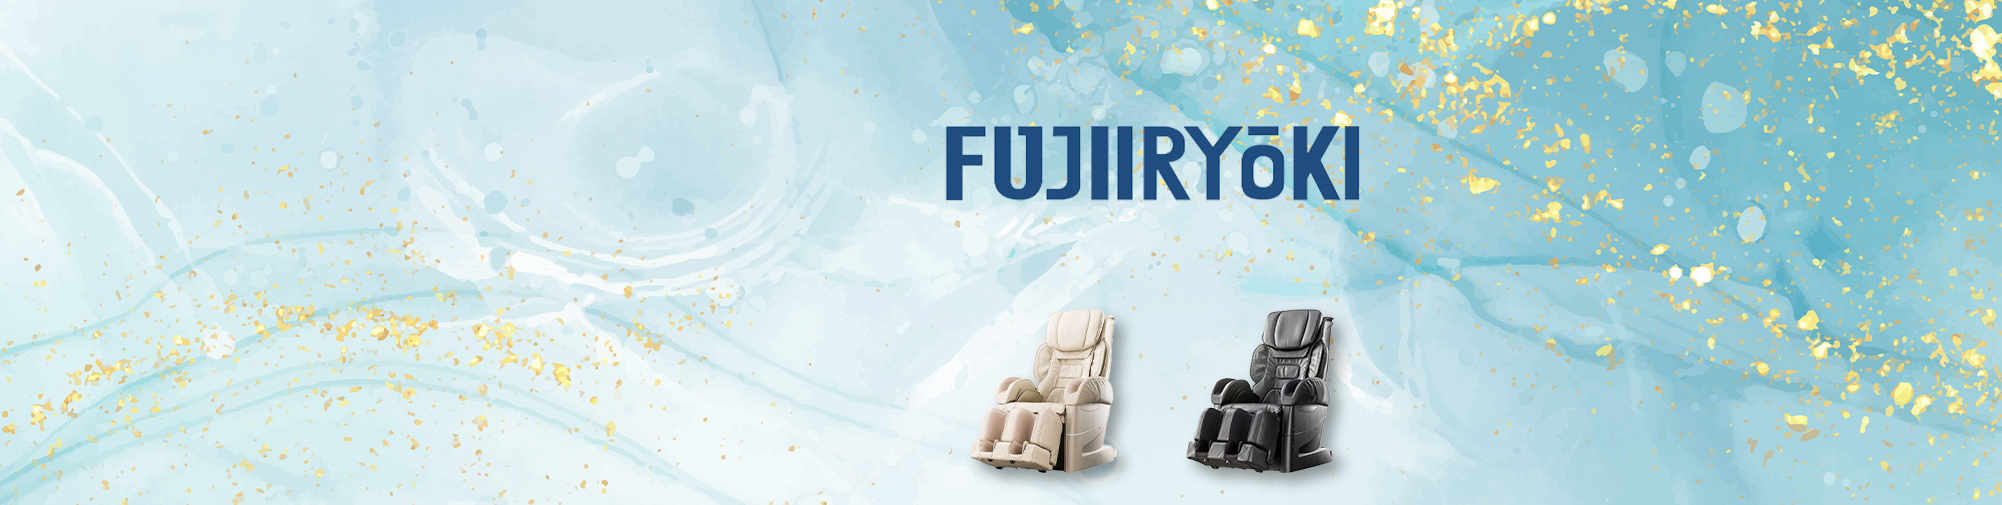 Fujiiryoki - L'histoire des fauteuils de massage | Le monde des fauteuils de massage